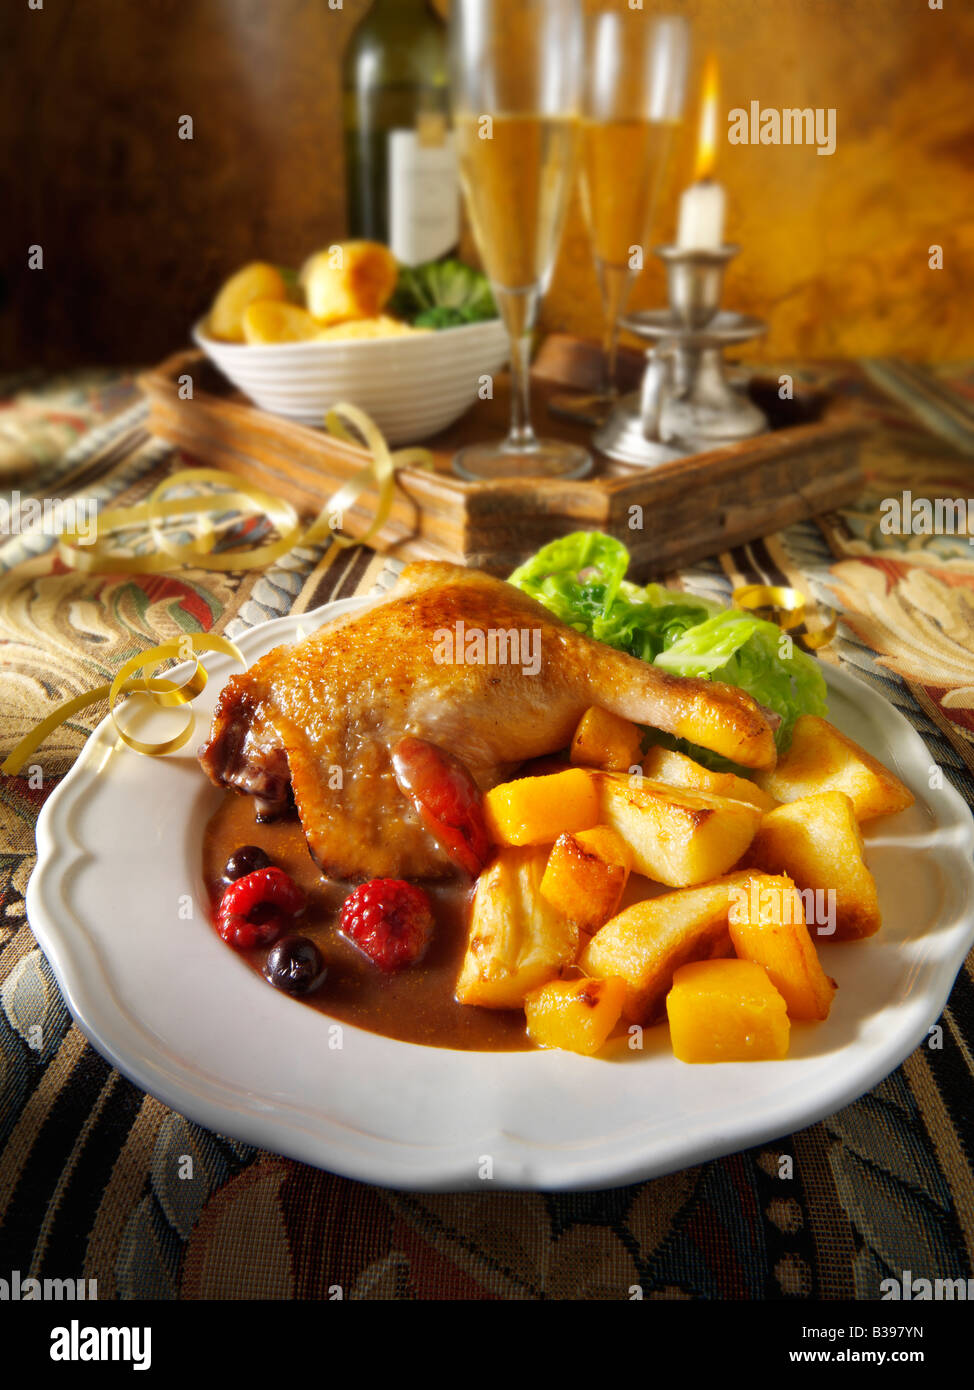 Cuisse de canard au jambon rôti servie avec une sauce aux fruits d'hiver, des pommes de terre rôties et des légumes dans un cadre festif Banque D'Images